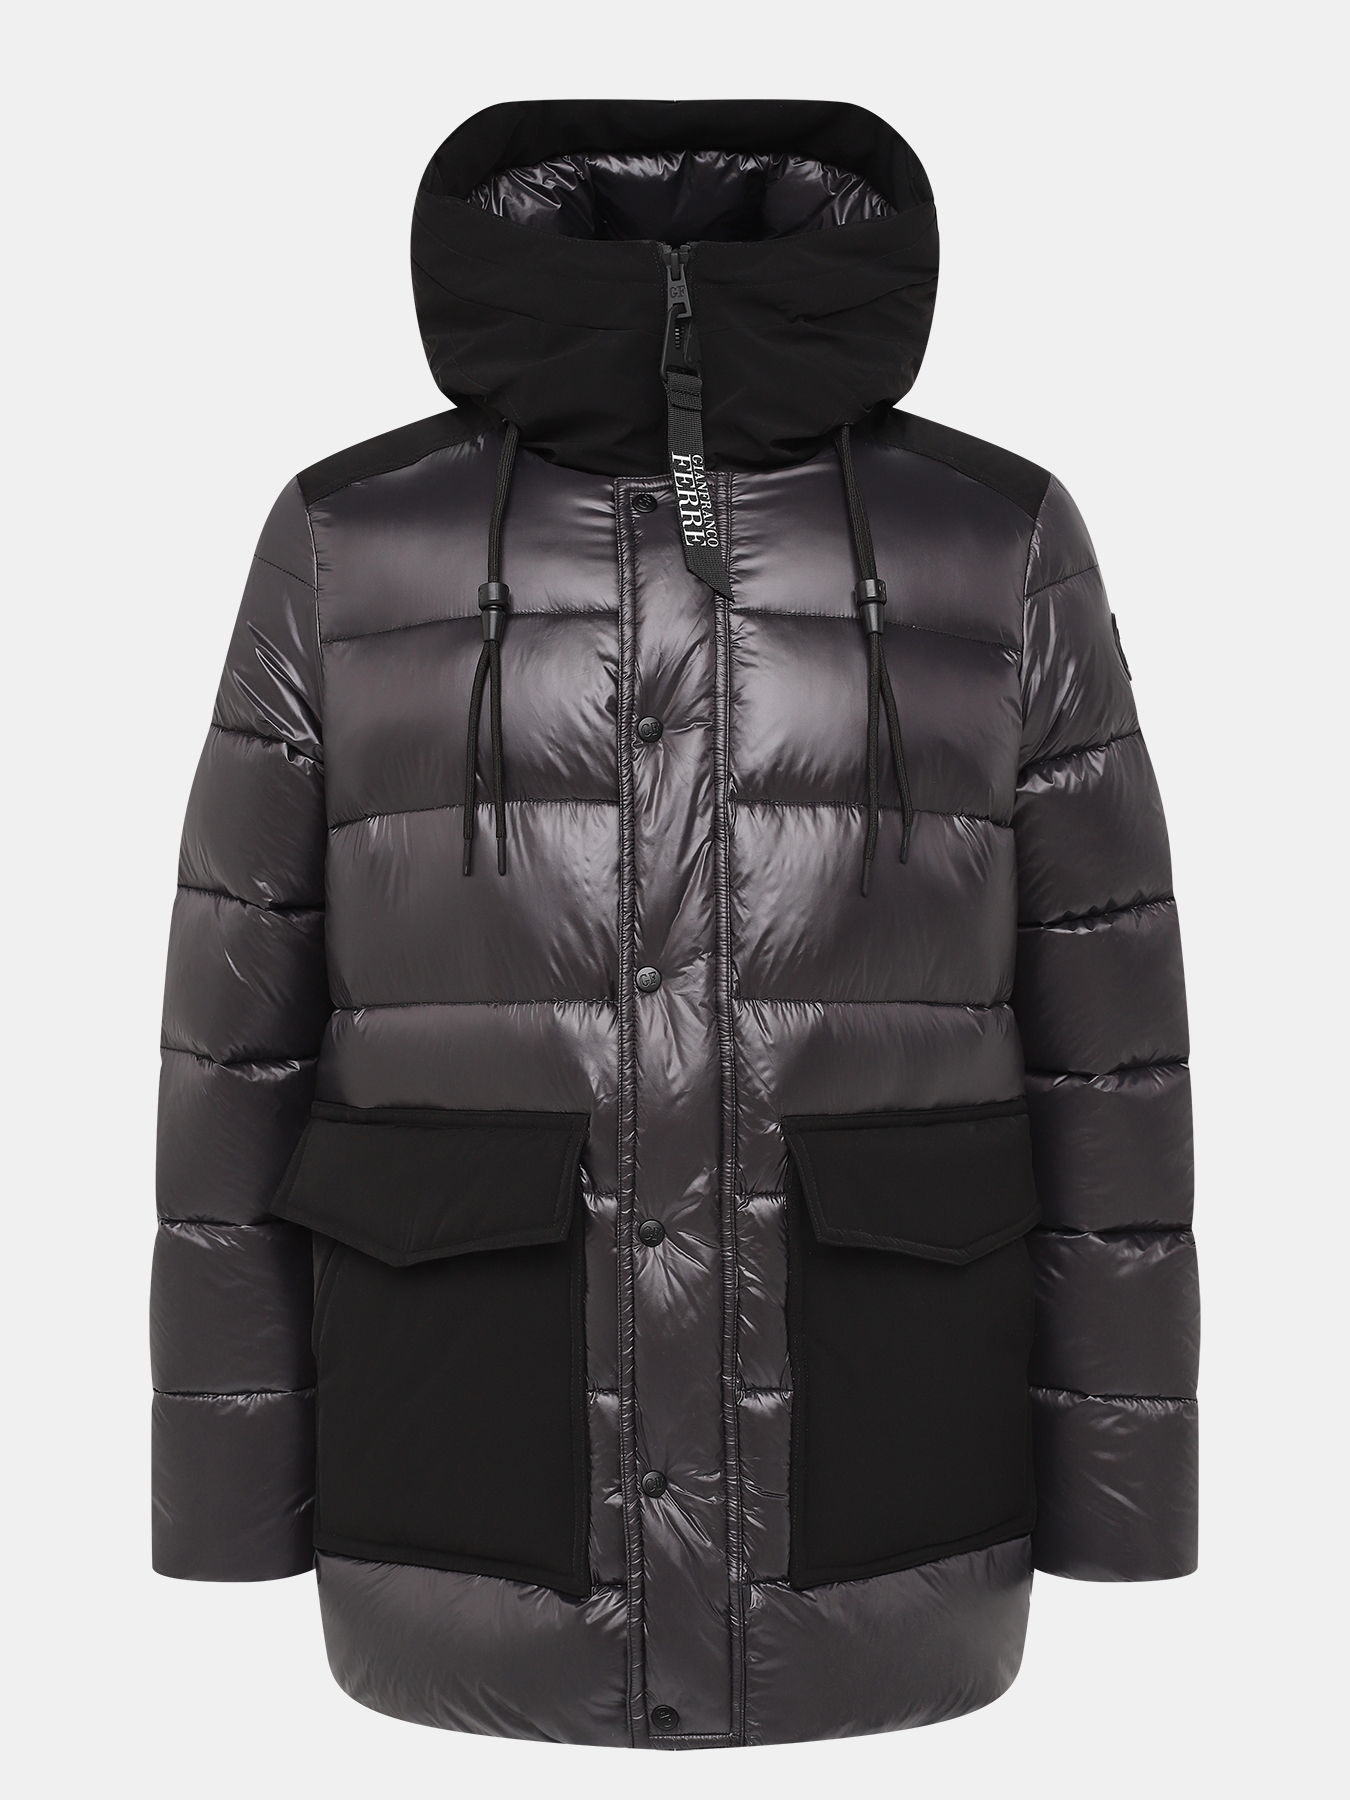 Куртка Gianfranco Ferre 418902-046, цвет черный, размер 54